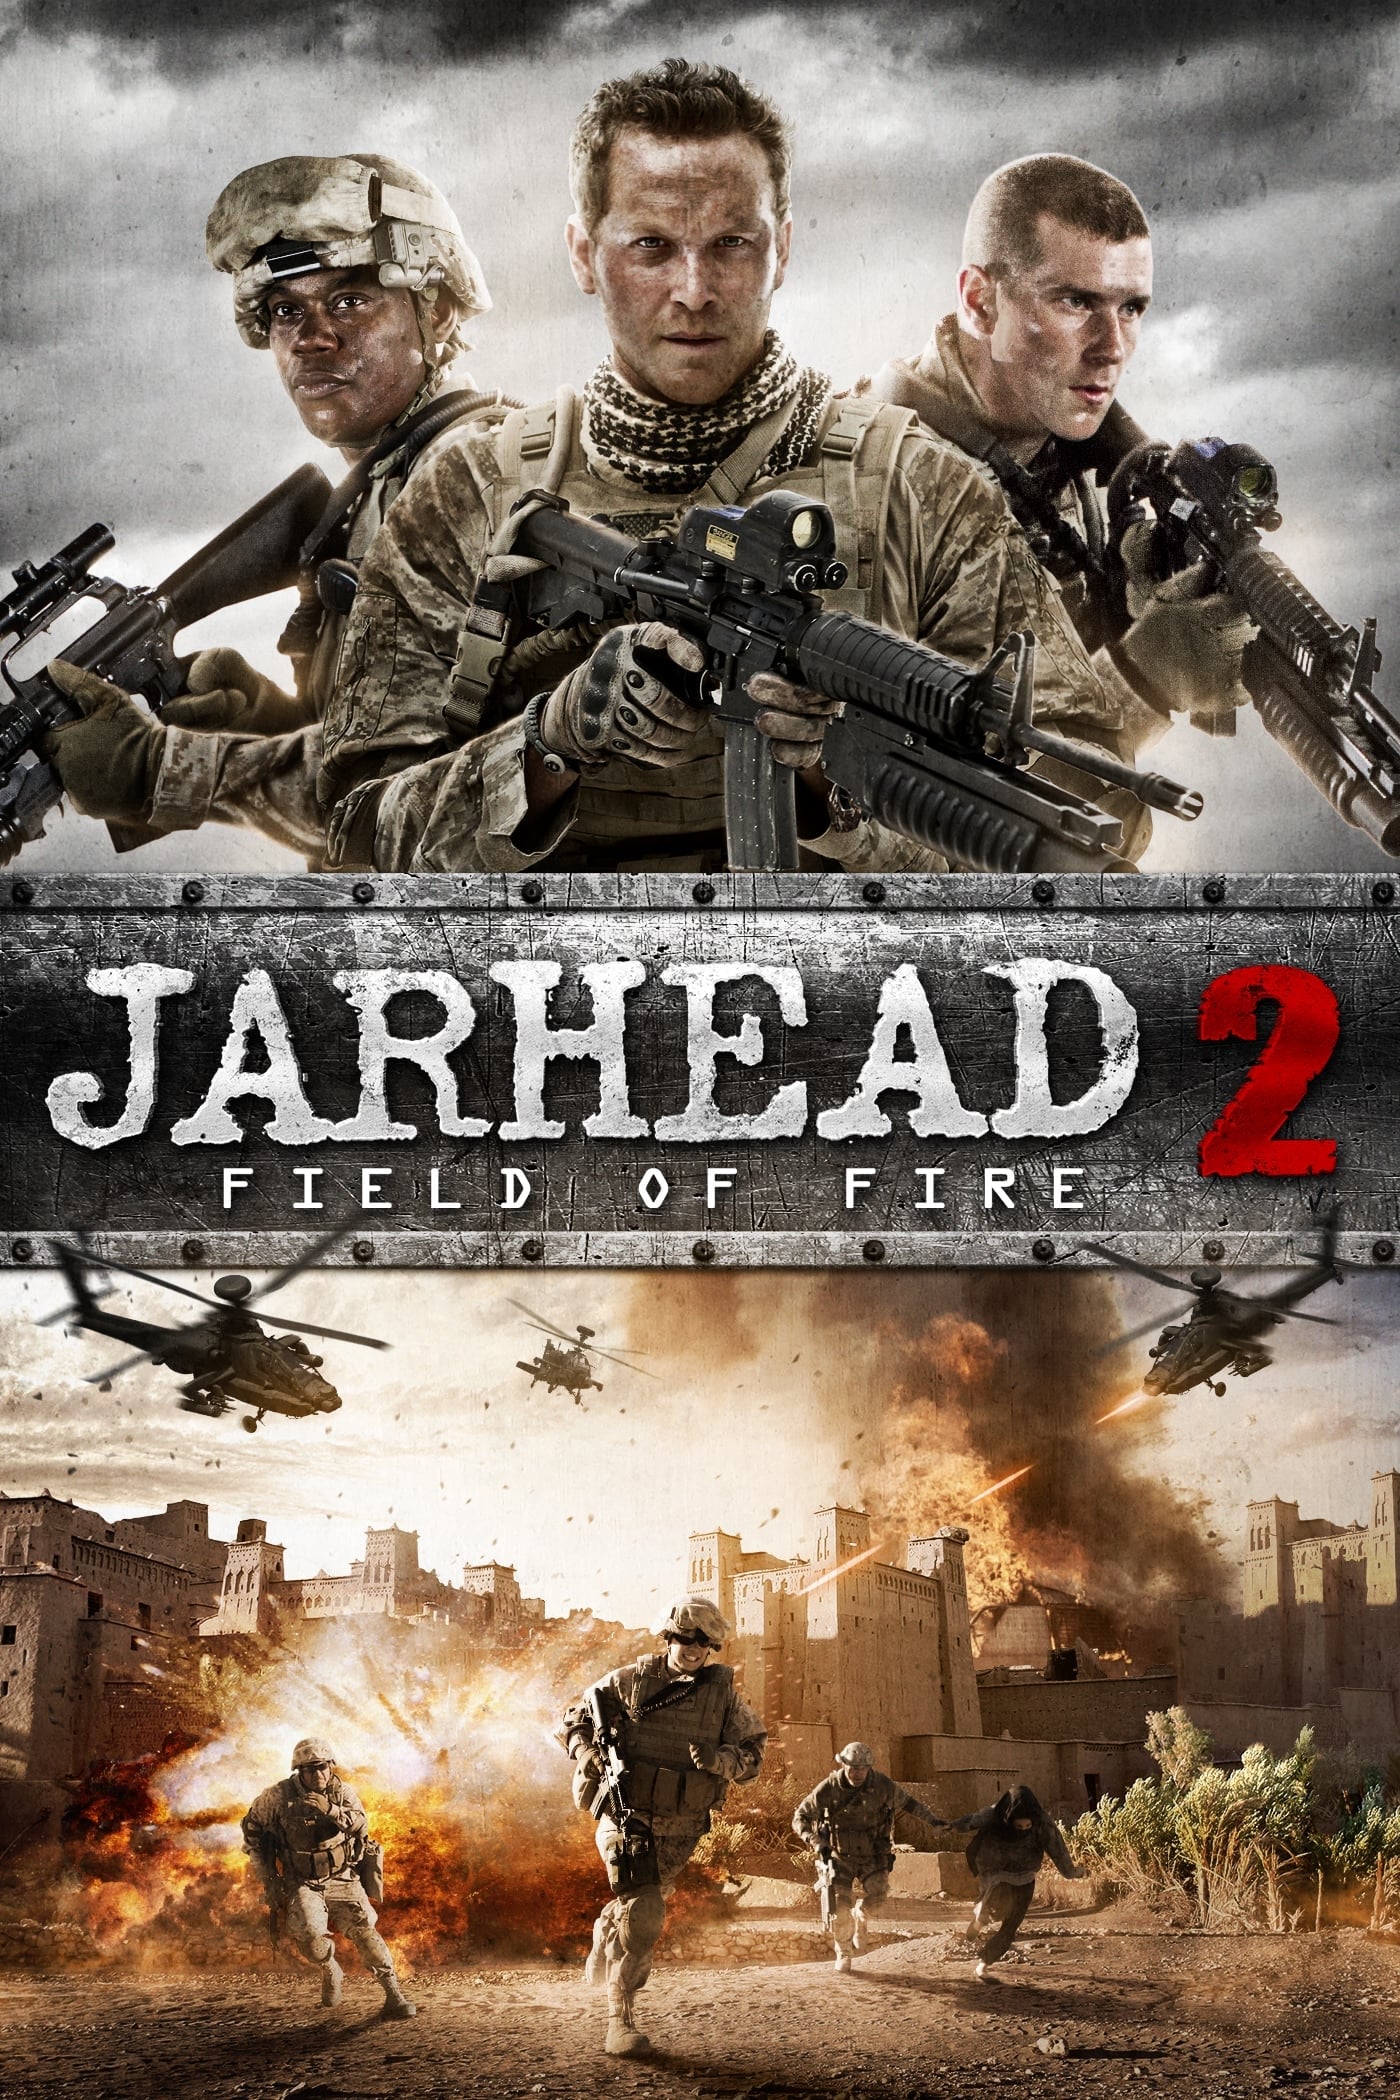 Jarhead 2: Tormenta de Fuego